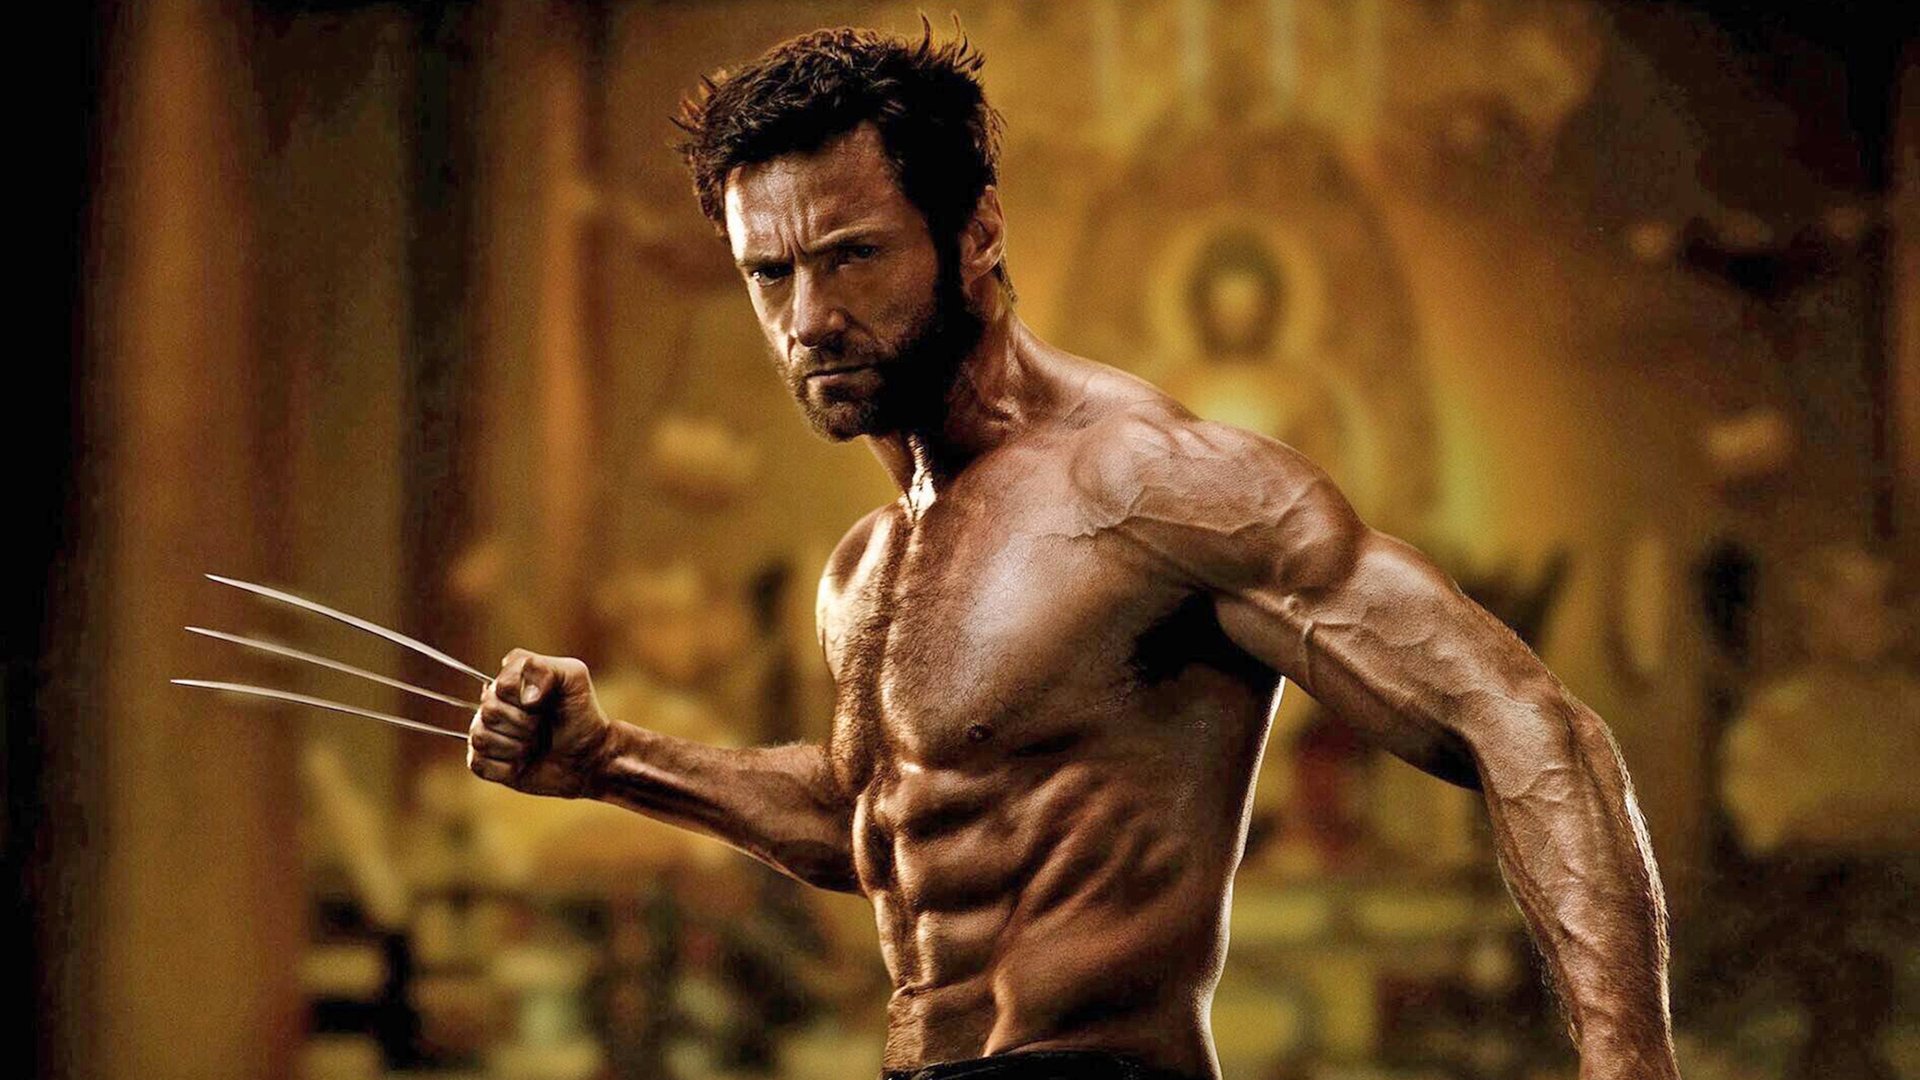 Marvel-Star Hugh Jackman enthüllt: Die Wolverine-Rolle ging nicht spurlos an ihm vorbei